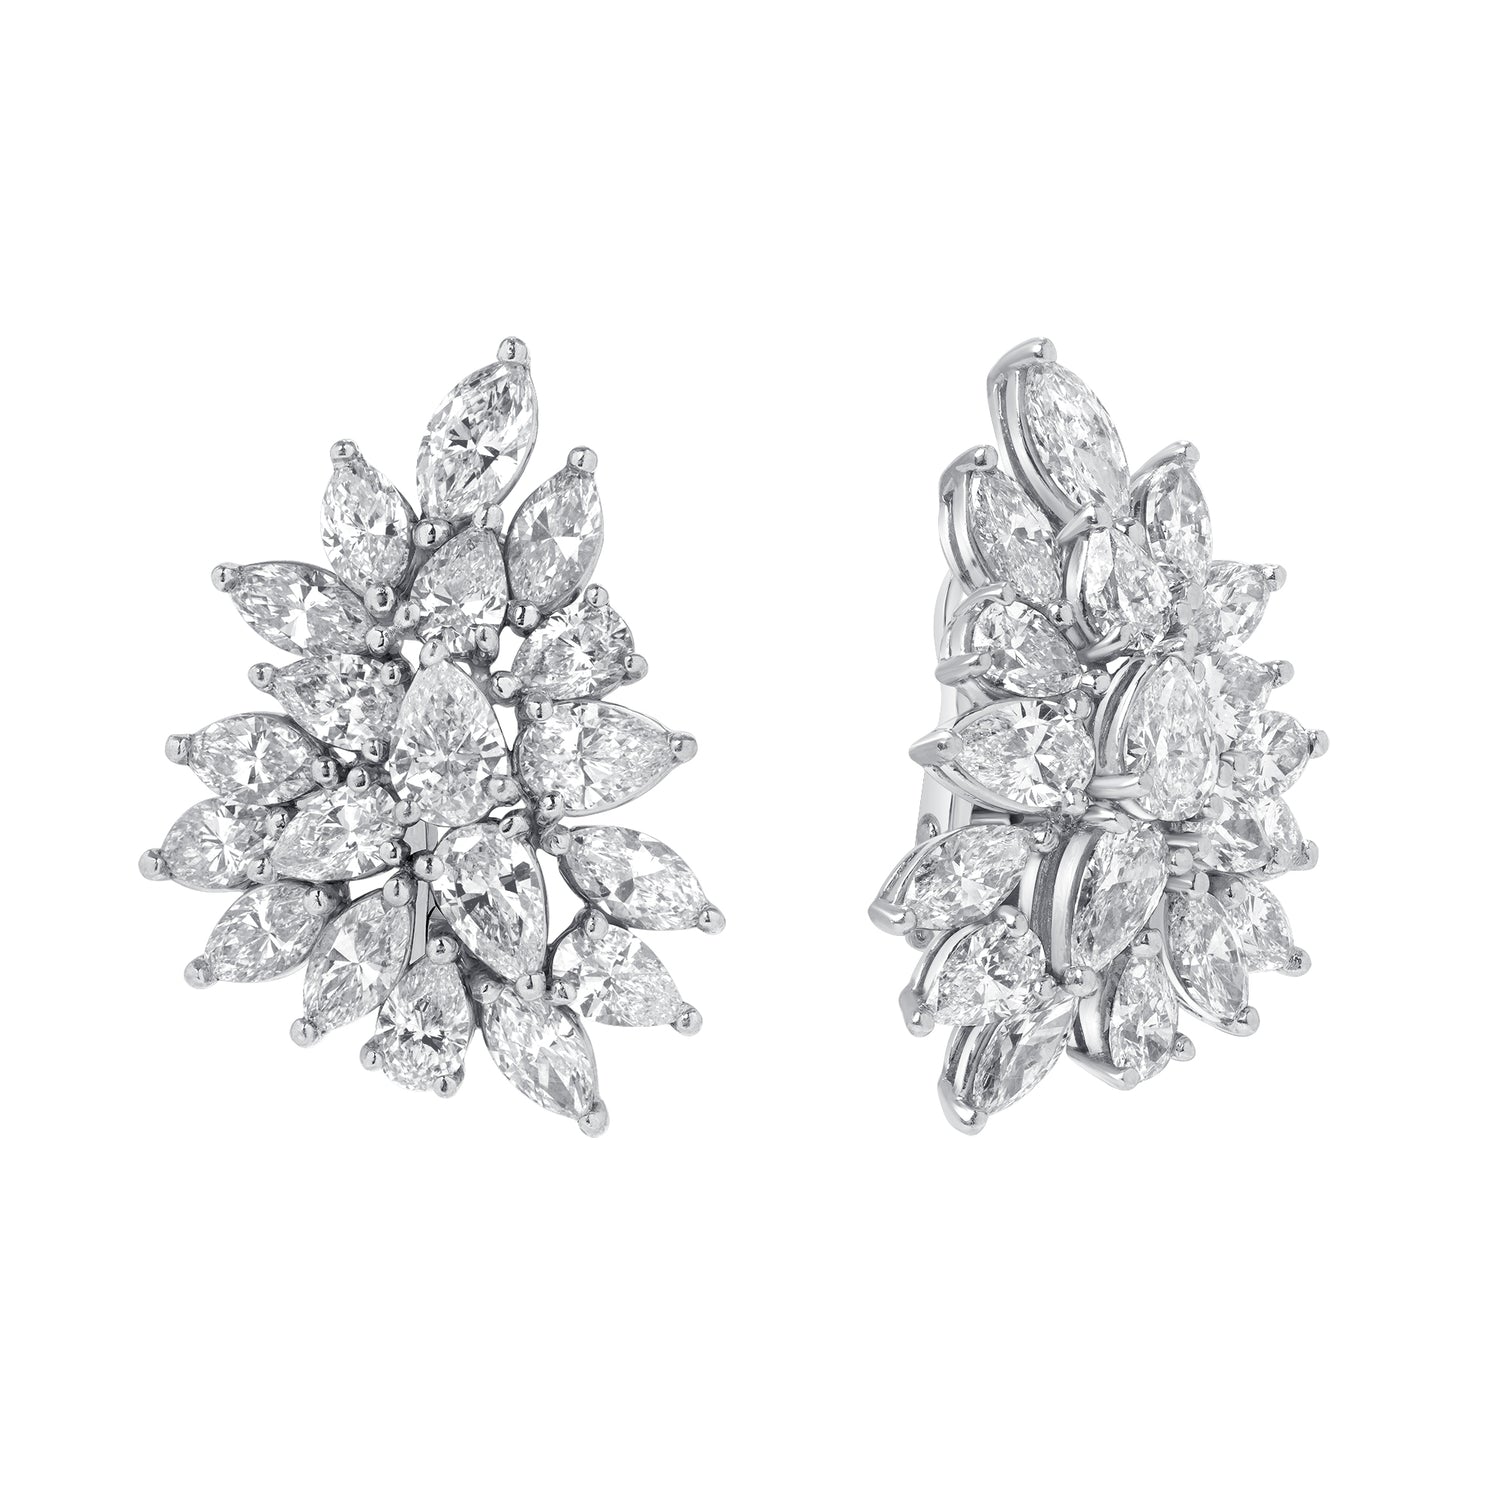 18k White Gold Mixed Shape Diamond Cluster Earrings